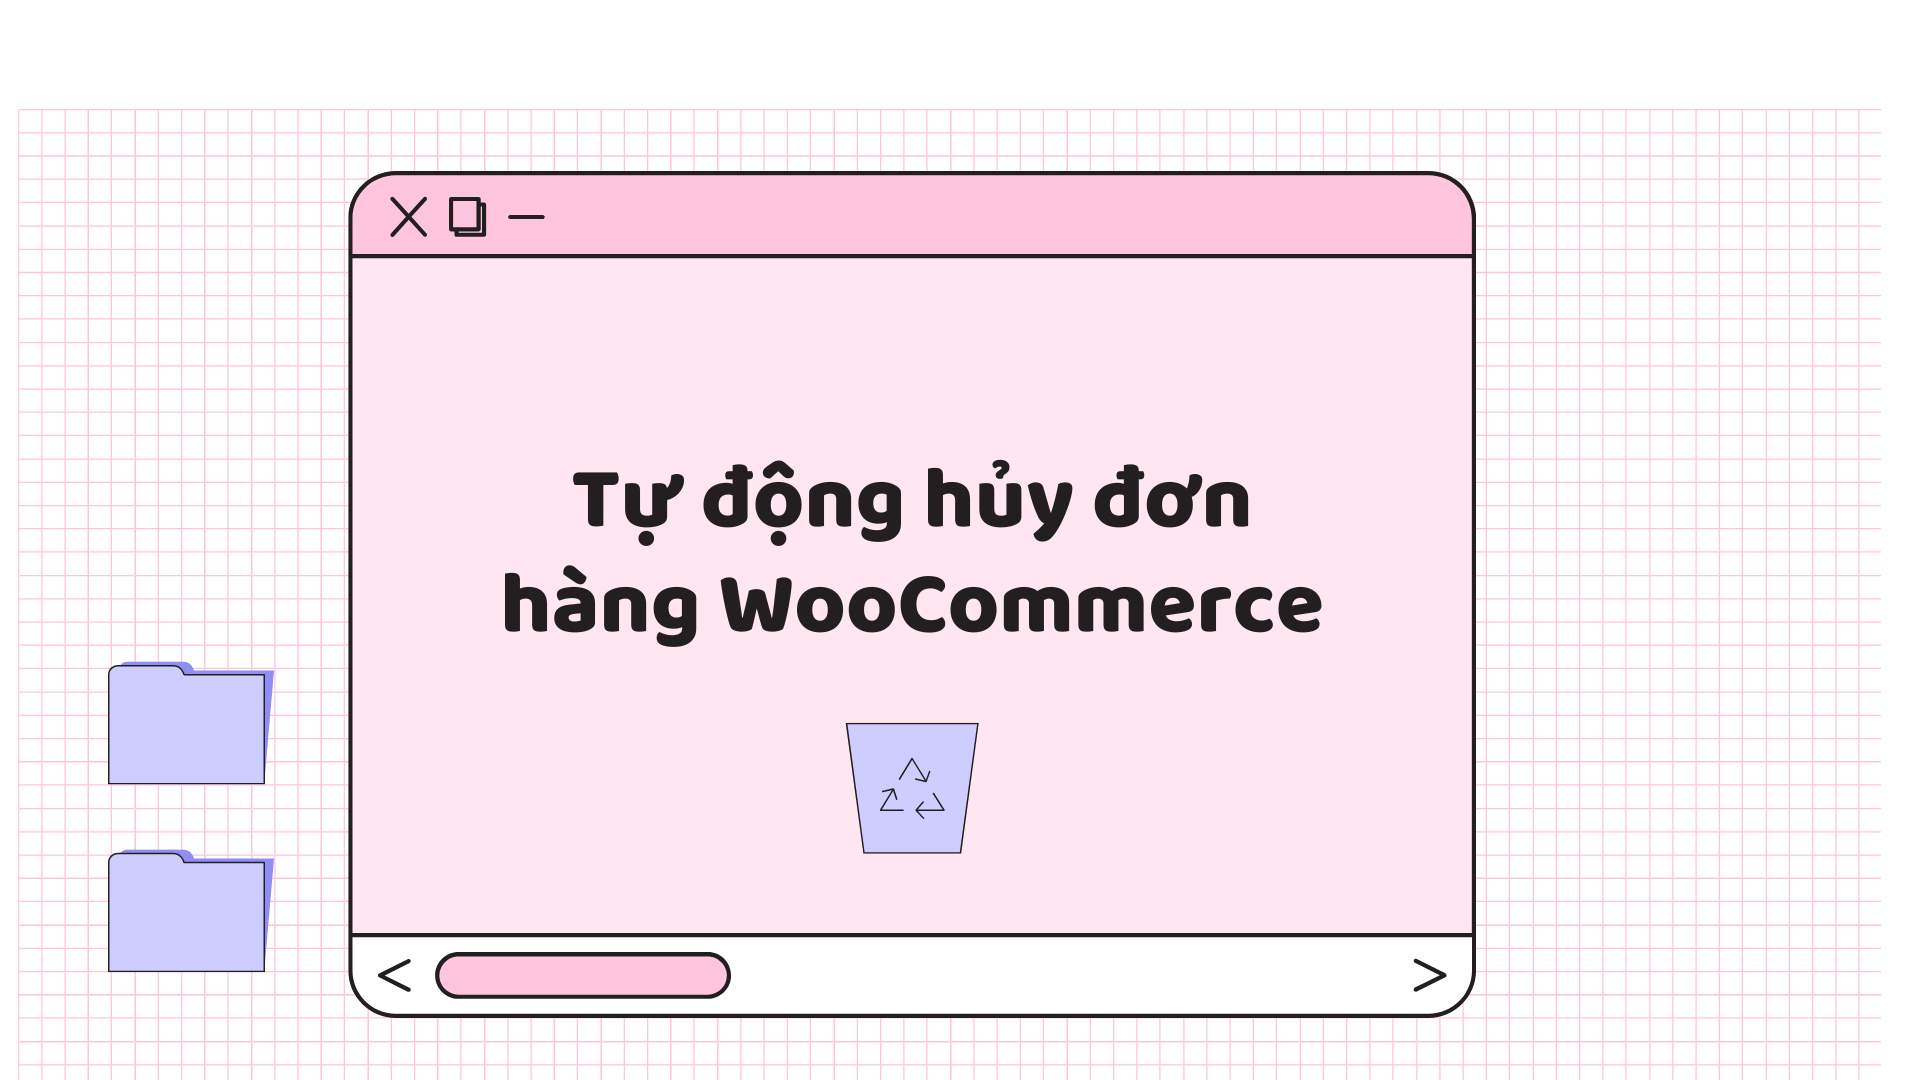 Tự động hủy đơn hàng WooCommerce sau 1 giờ nếu không thanh toán